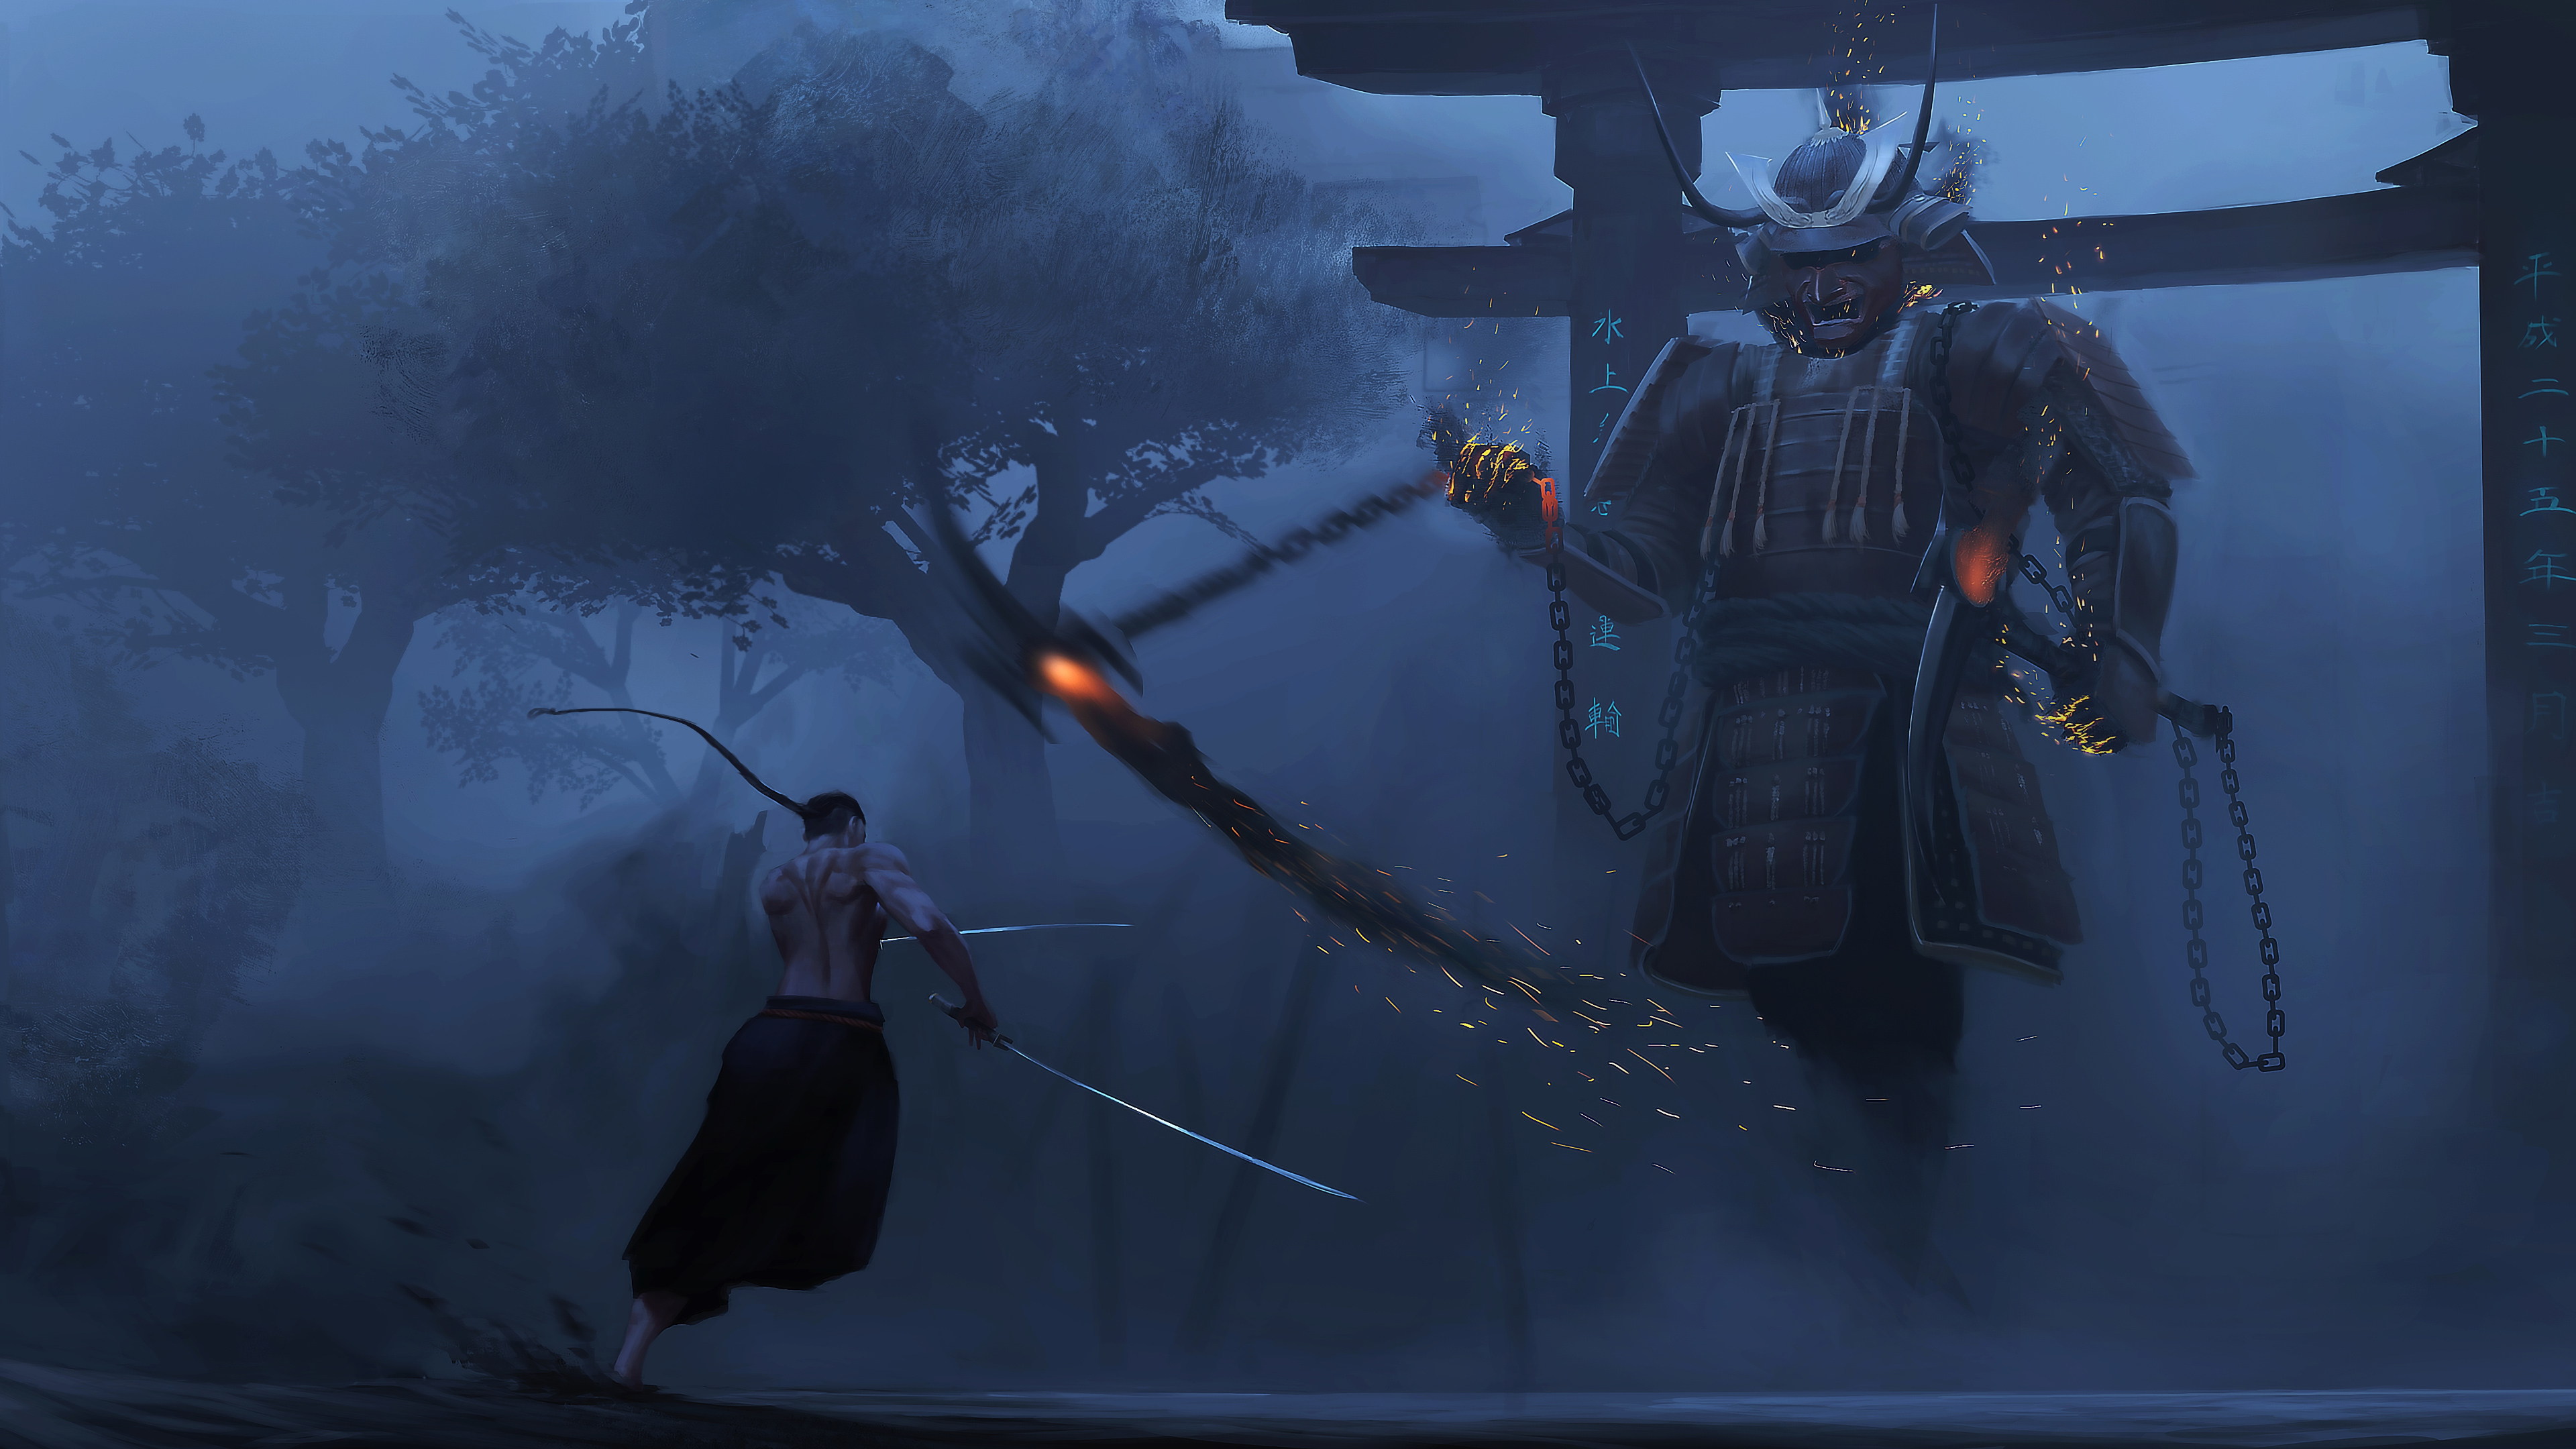 Samurai Bài Học Cuối Cùng - Hãy xem hình ảnh của Samurai Bài Học Cuối Cùng để cảm nhận những giá trị đích thực của cuộc sống. Những bài học giữa kiếm samurai chắc hẳn sẽ khiến bạn ngẩn ngơ và suy ngẫm. Hãy chuẩn bị sẵn sàng trải nghiệm các giá trị tinh thần đích thực khi xem những hình ảnh này.